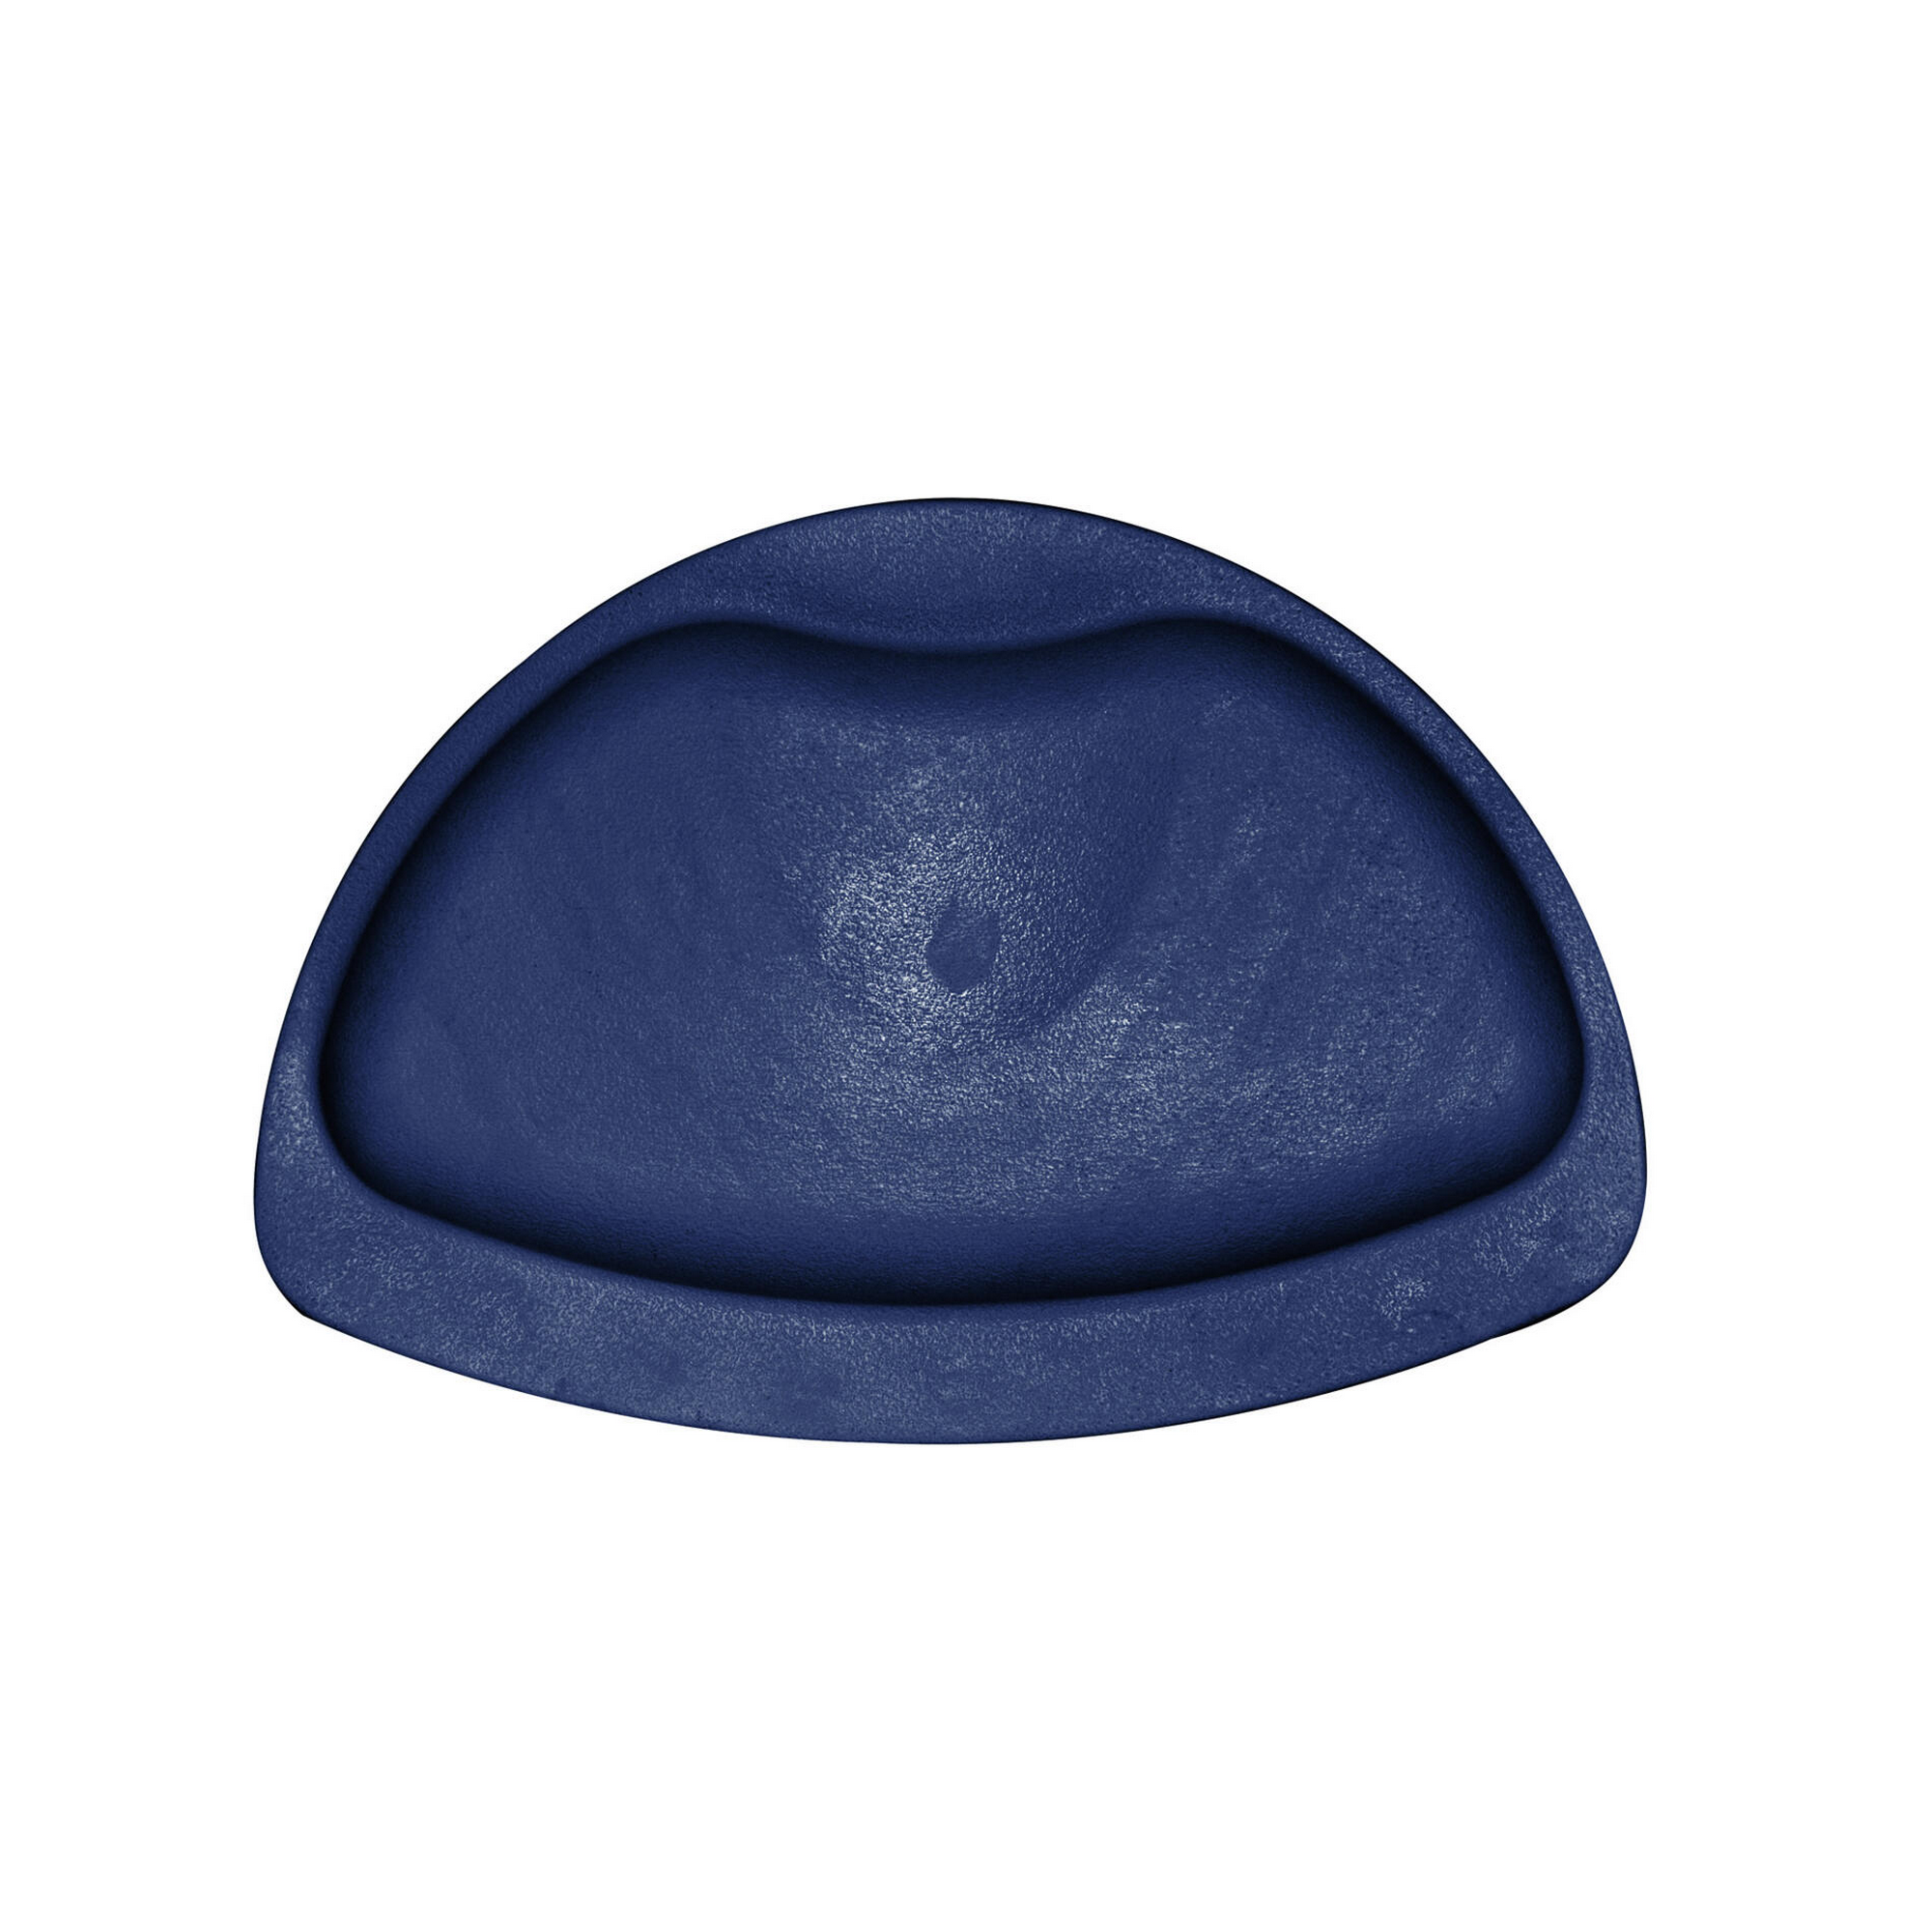 Nackenkissen 'TecnoPlus' blau 30 x 20 cm für Badewannen + product picture